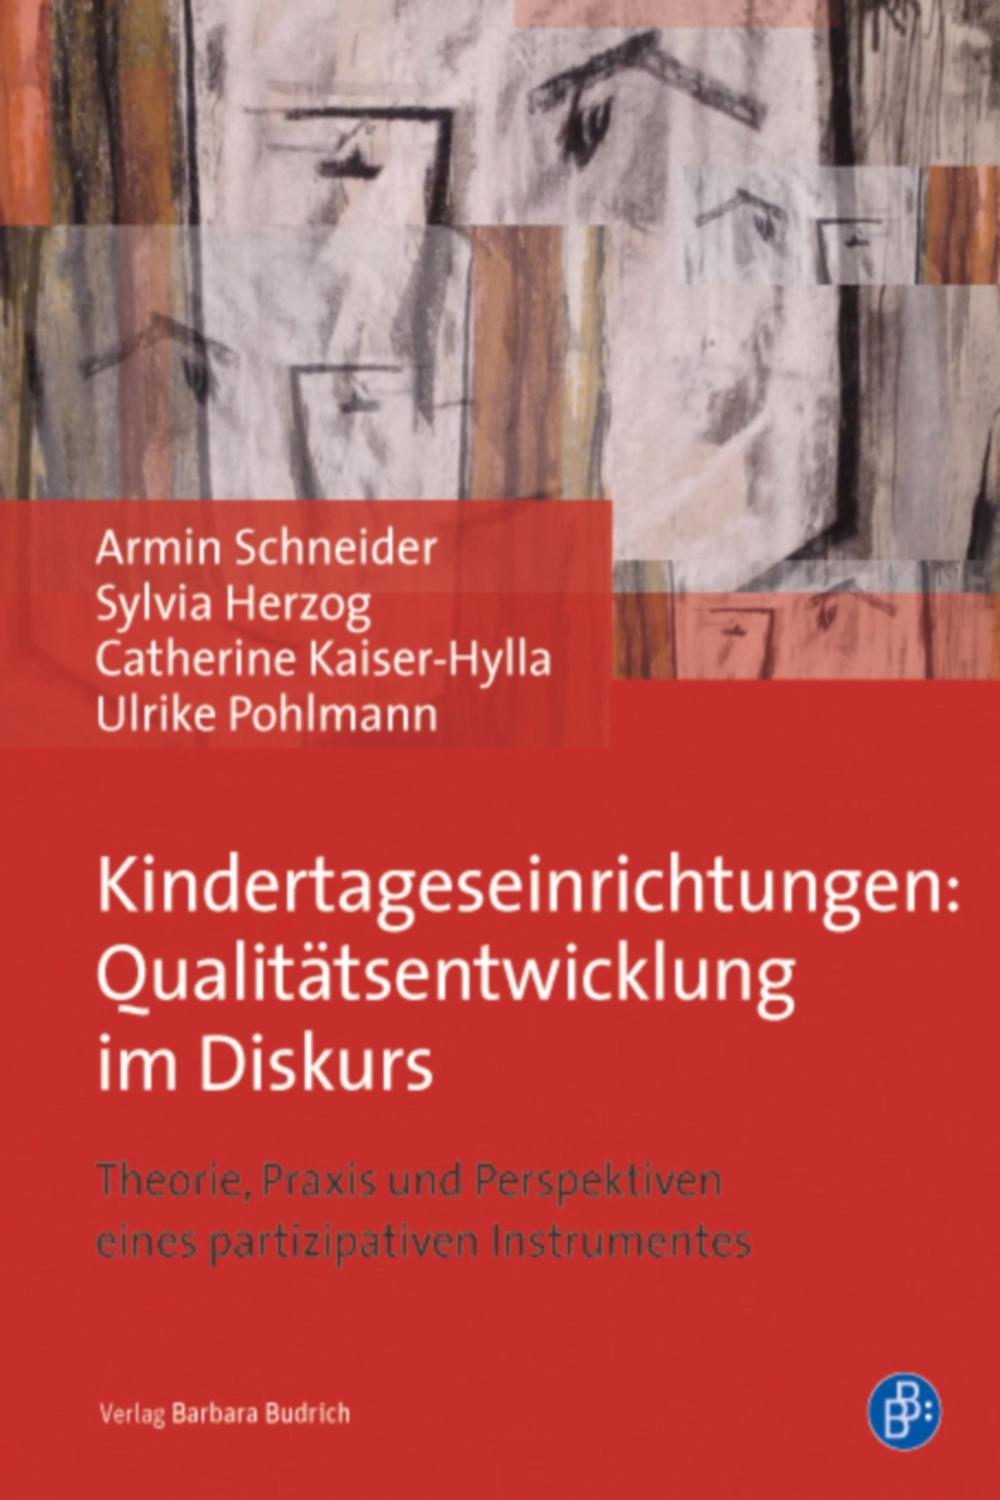 Kindertageseinrichtungen: Qualitätsentwicklung im Diskurs - Armin Schneider, Catherine Kaiser-Hylla, Sylvia Herzog, Ulrike Pohlmann